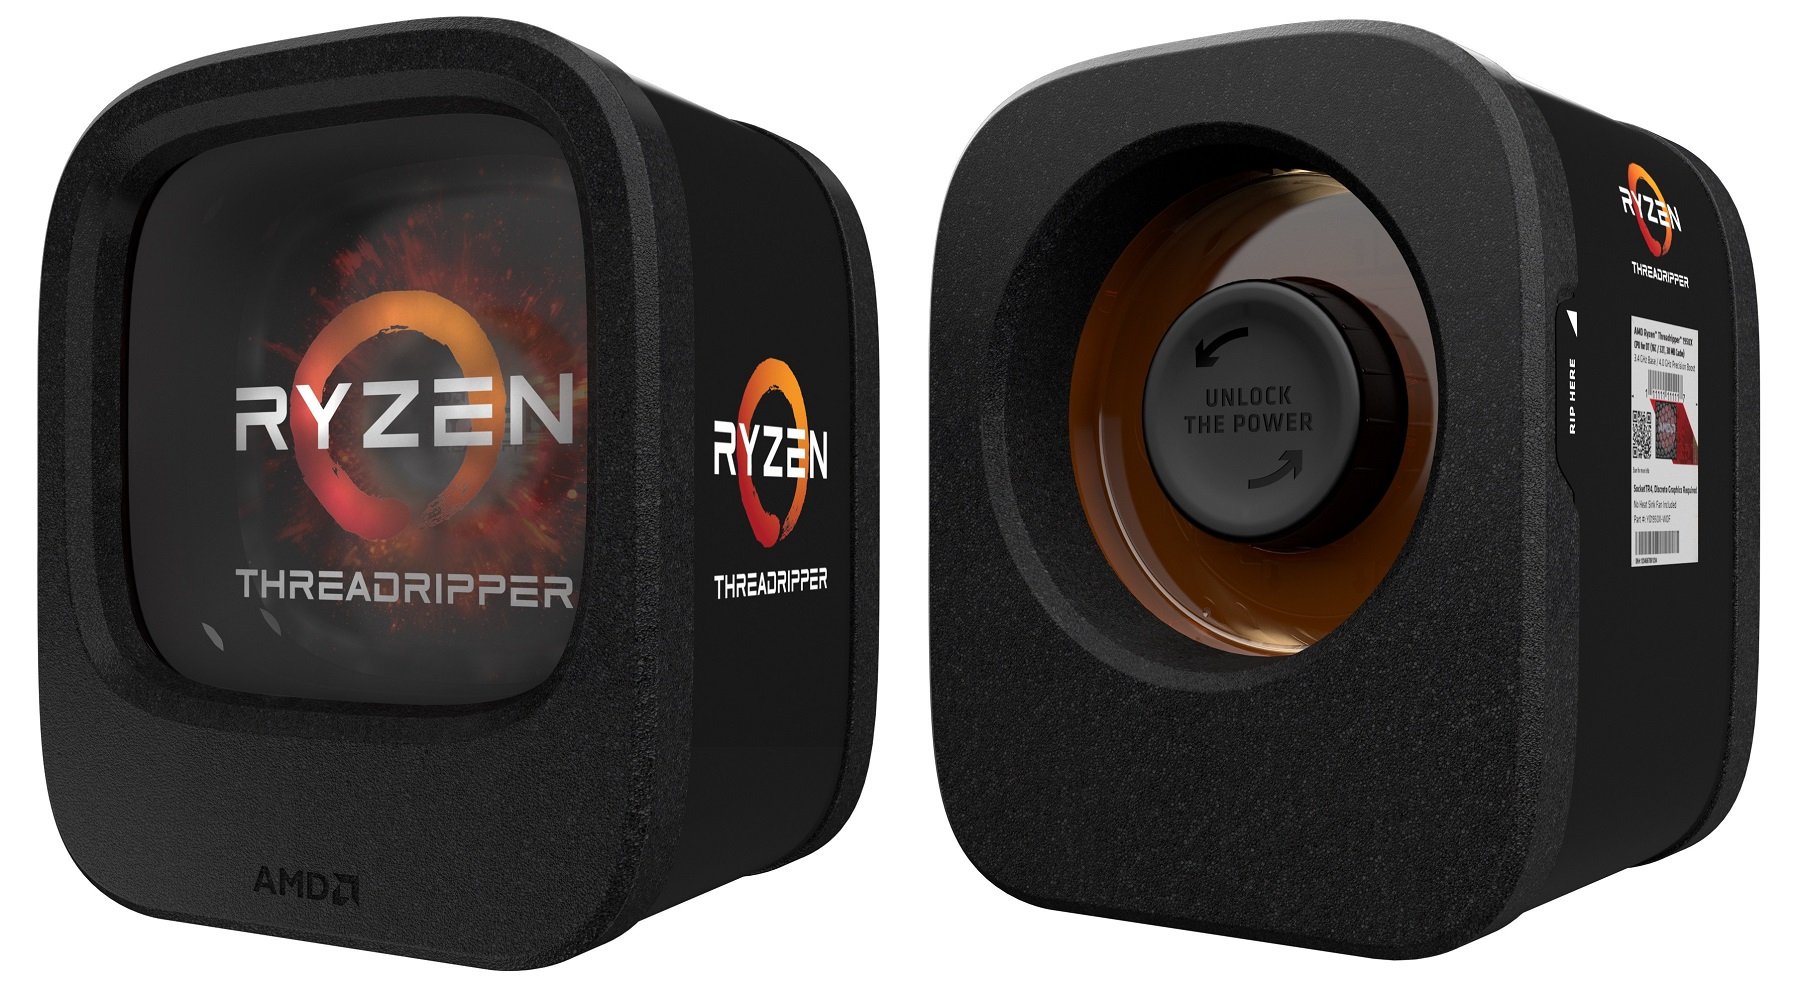 Η AMD ανακοίνωσε το lineup των επεξεργαστών Ryzen Threadripper και τη διαθεσιμότητα τους